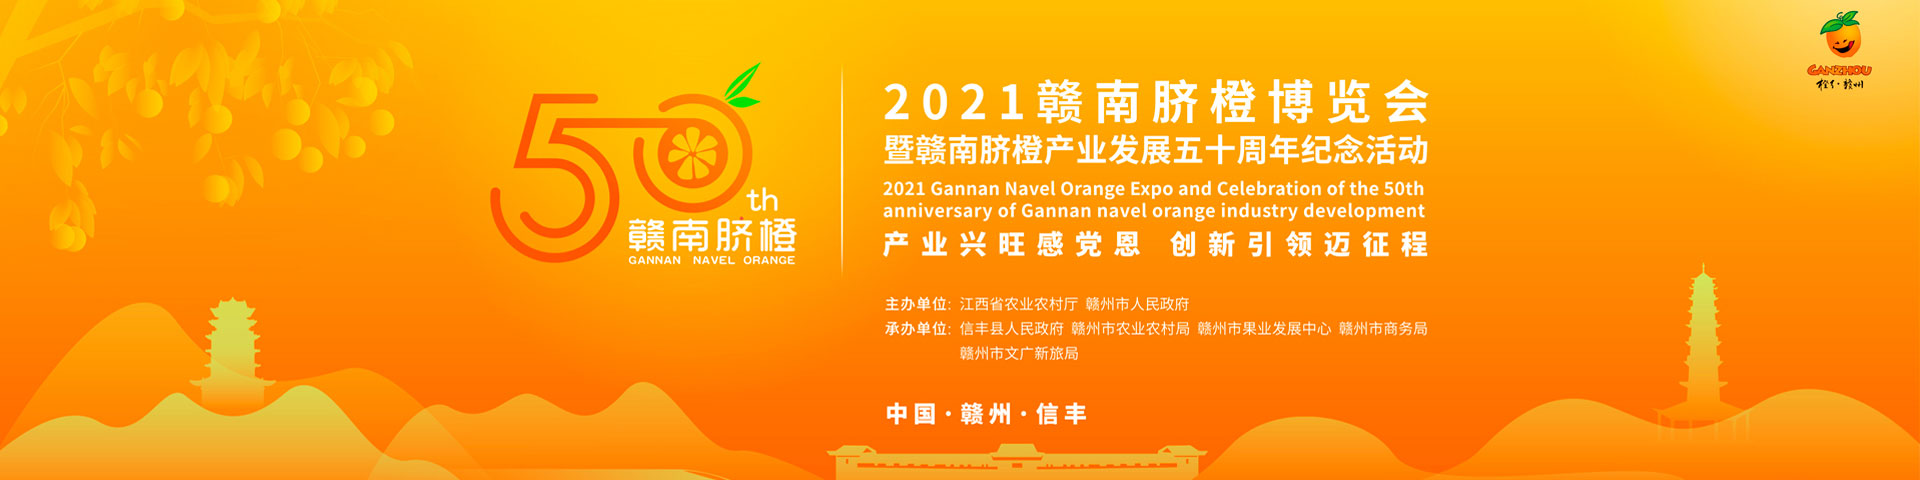 2021赣南脐橙博览会暨赣南脐橙产业发展50周年纪念活动